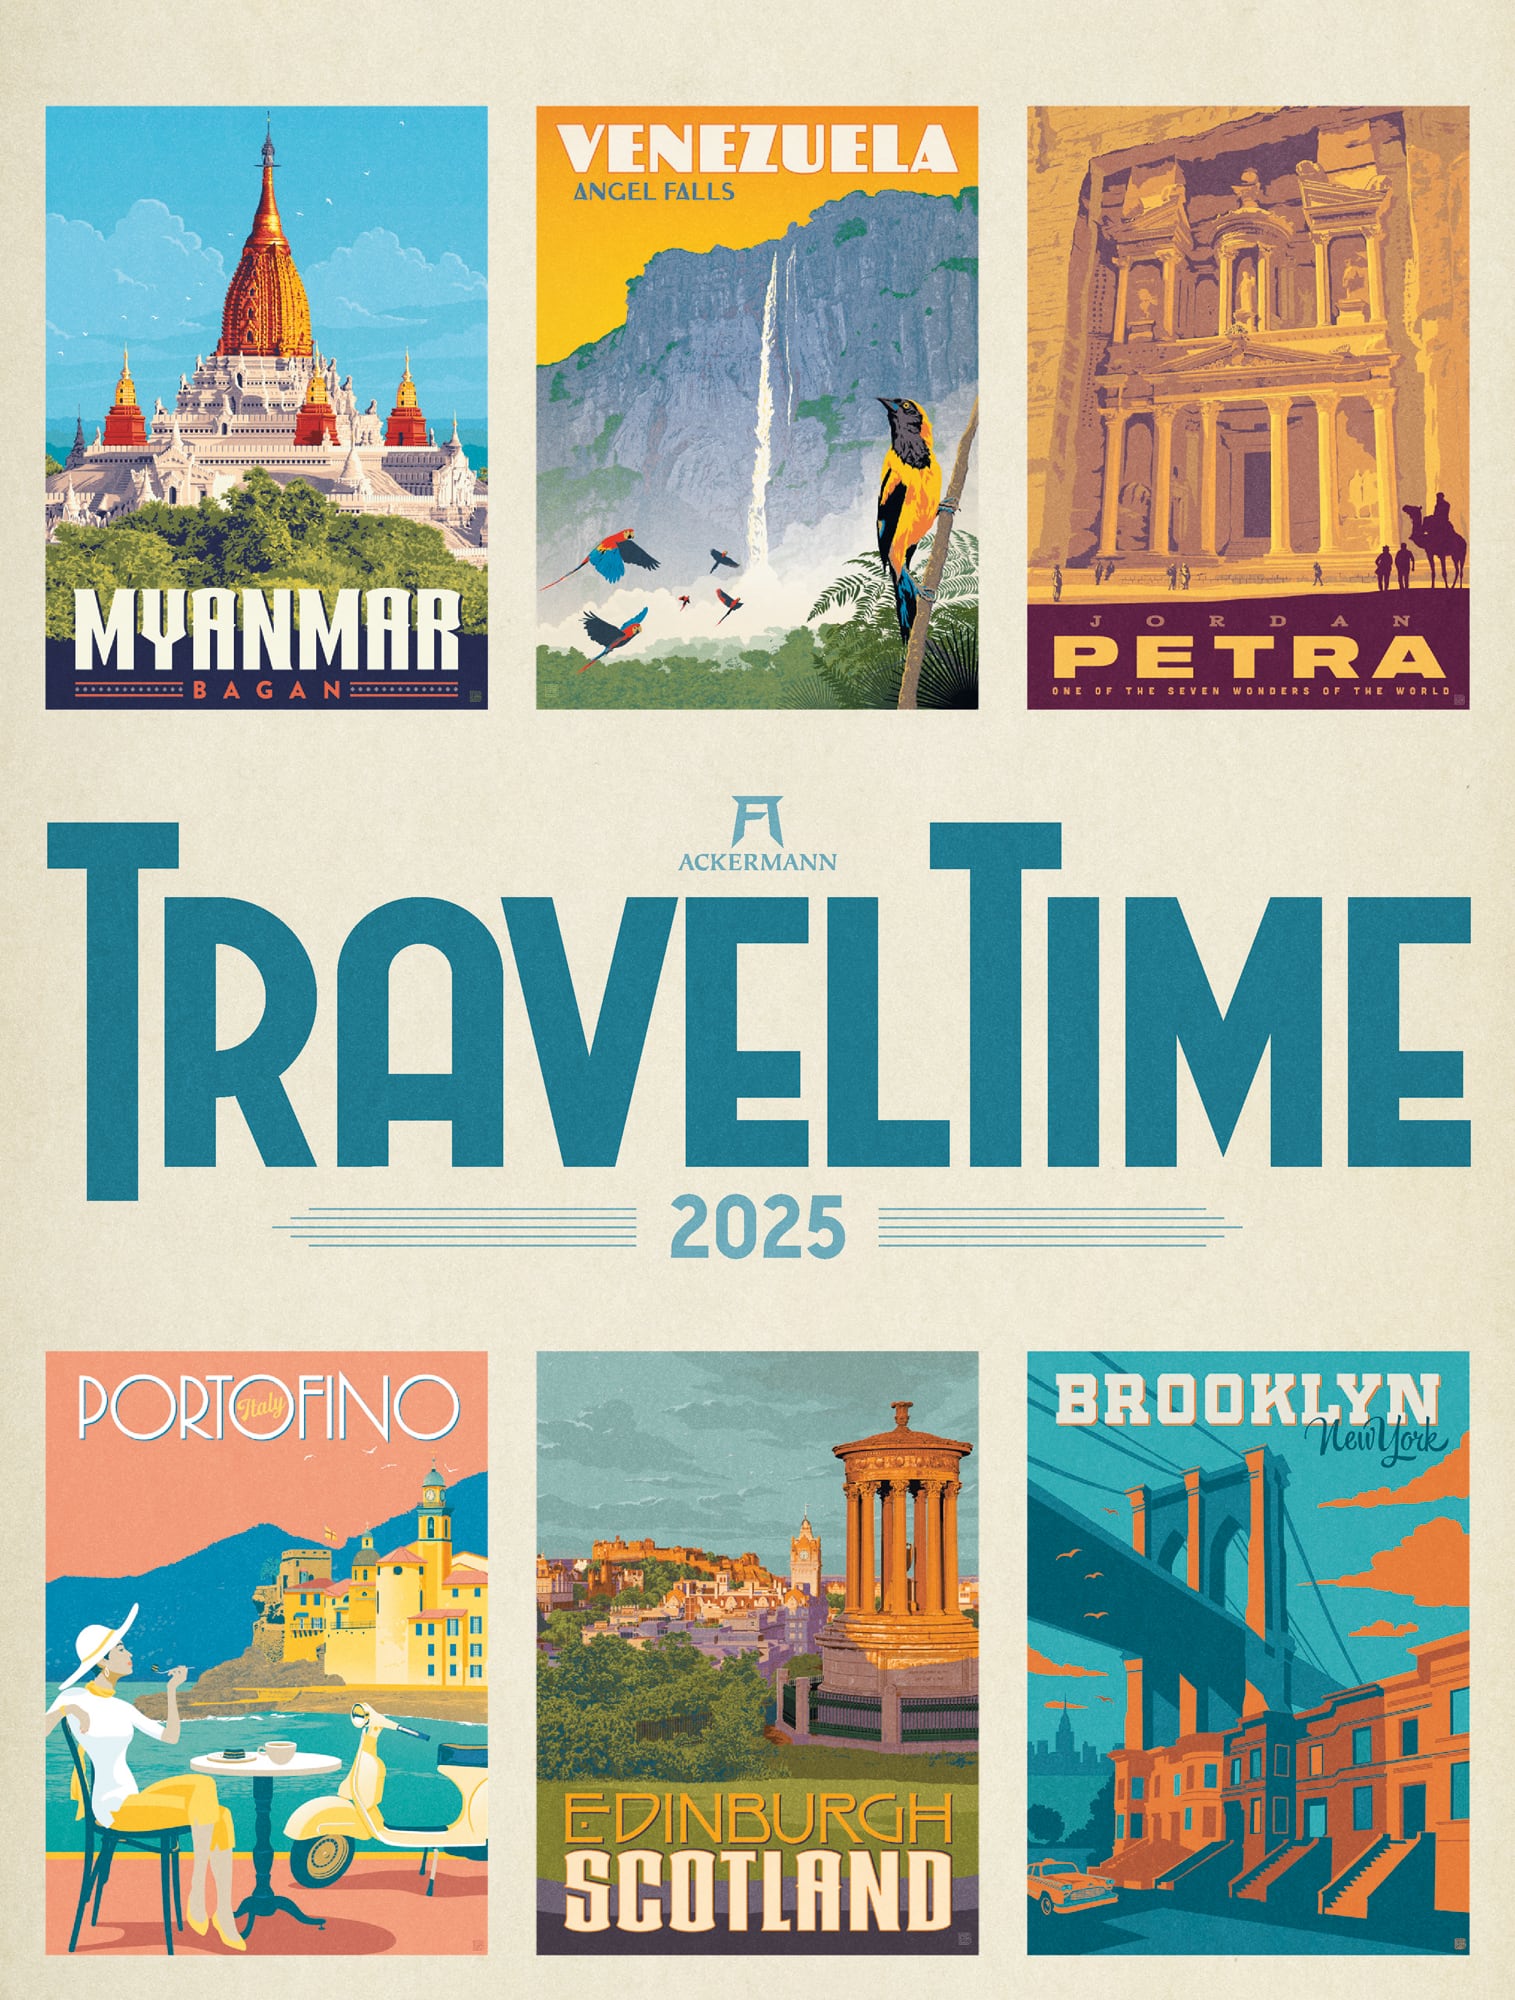 Ackermann Kalender Travel Time 2025 - Titelblatt